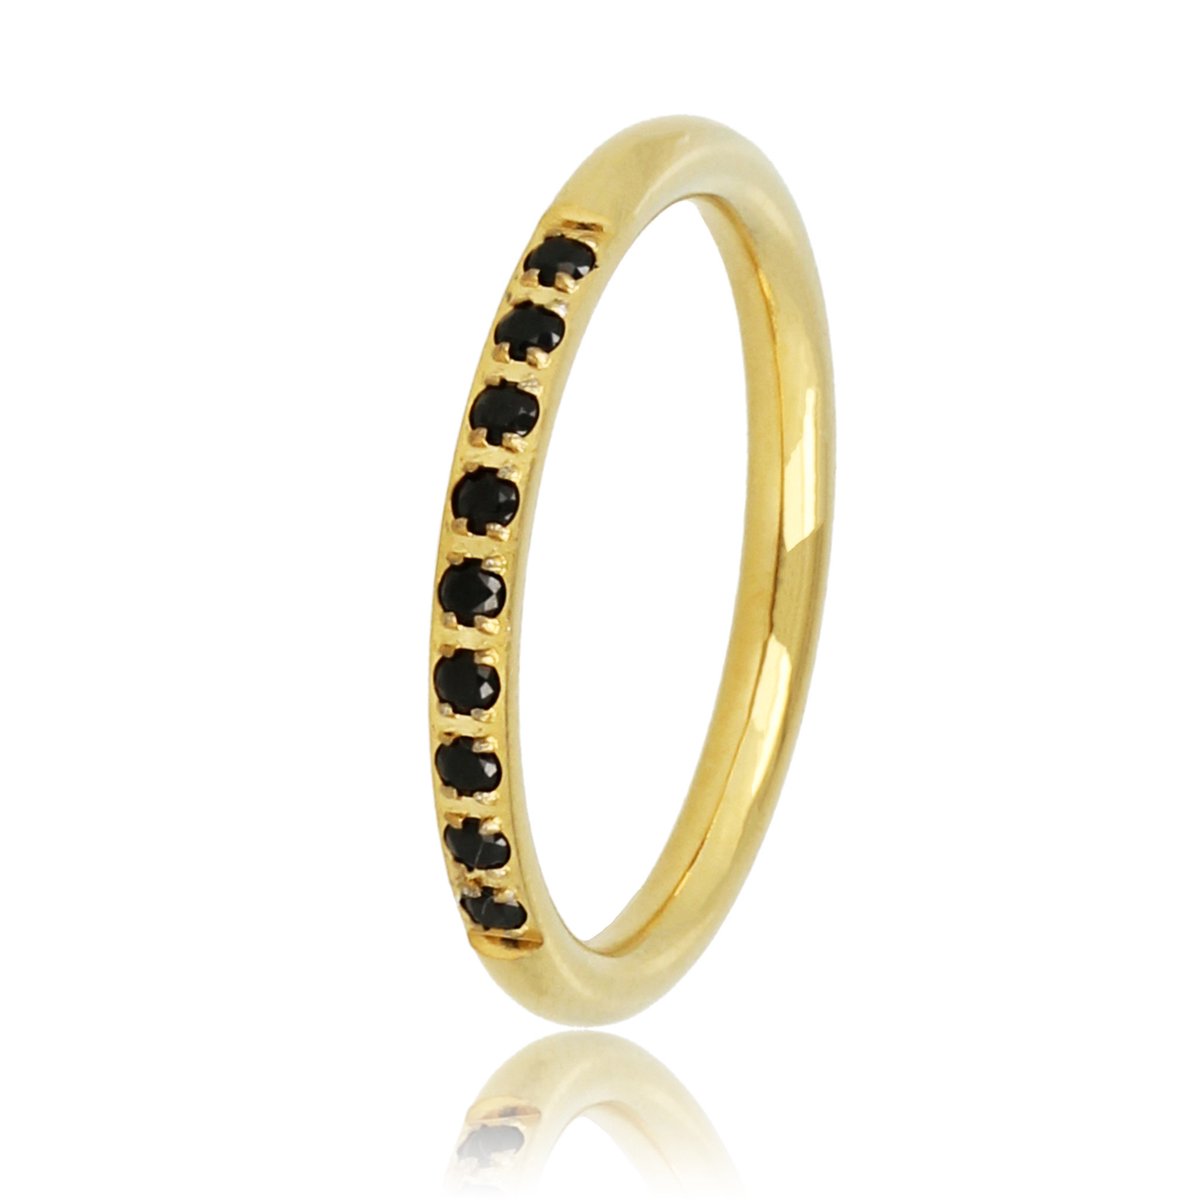 Fijne aanschuifring goud met zwarte steentjes - Smalle en fijne ring met zwarte zirkonia steentjes - Met luxe cadeauverpakking